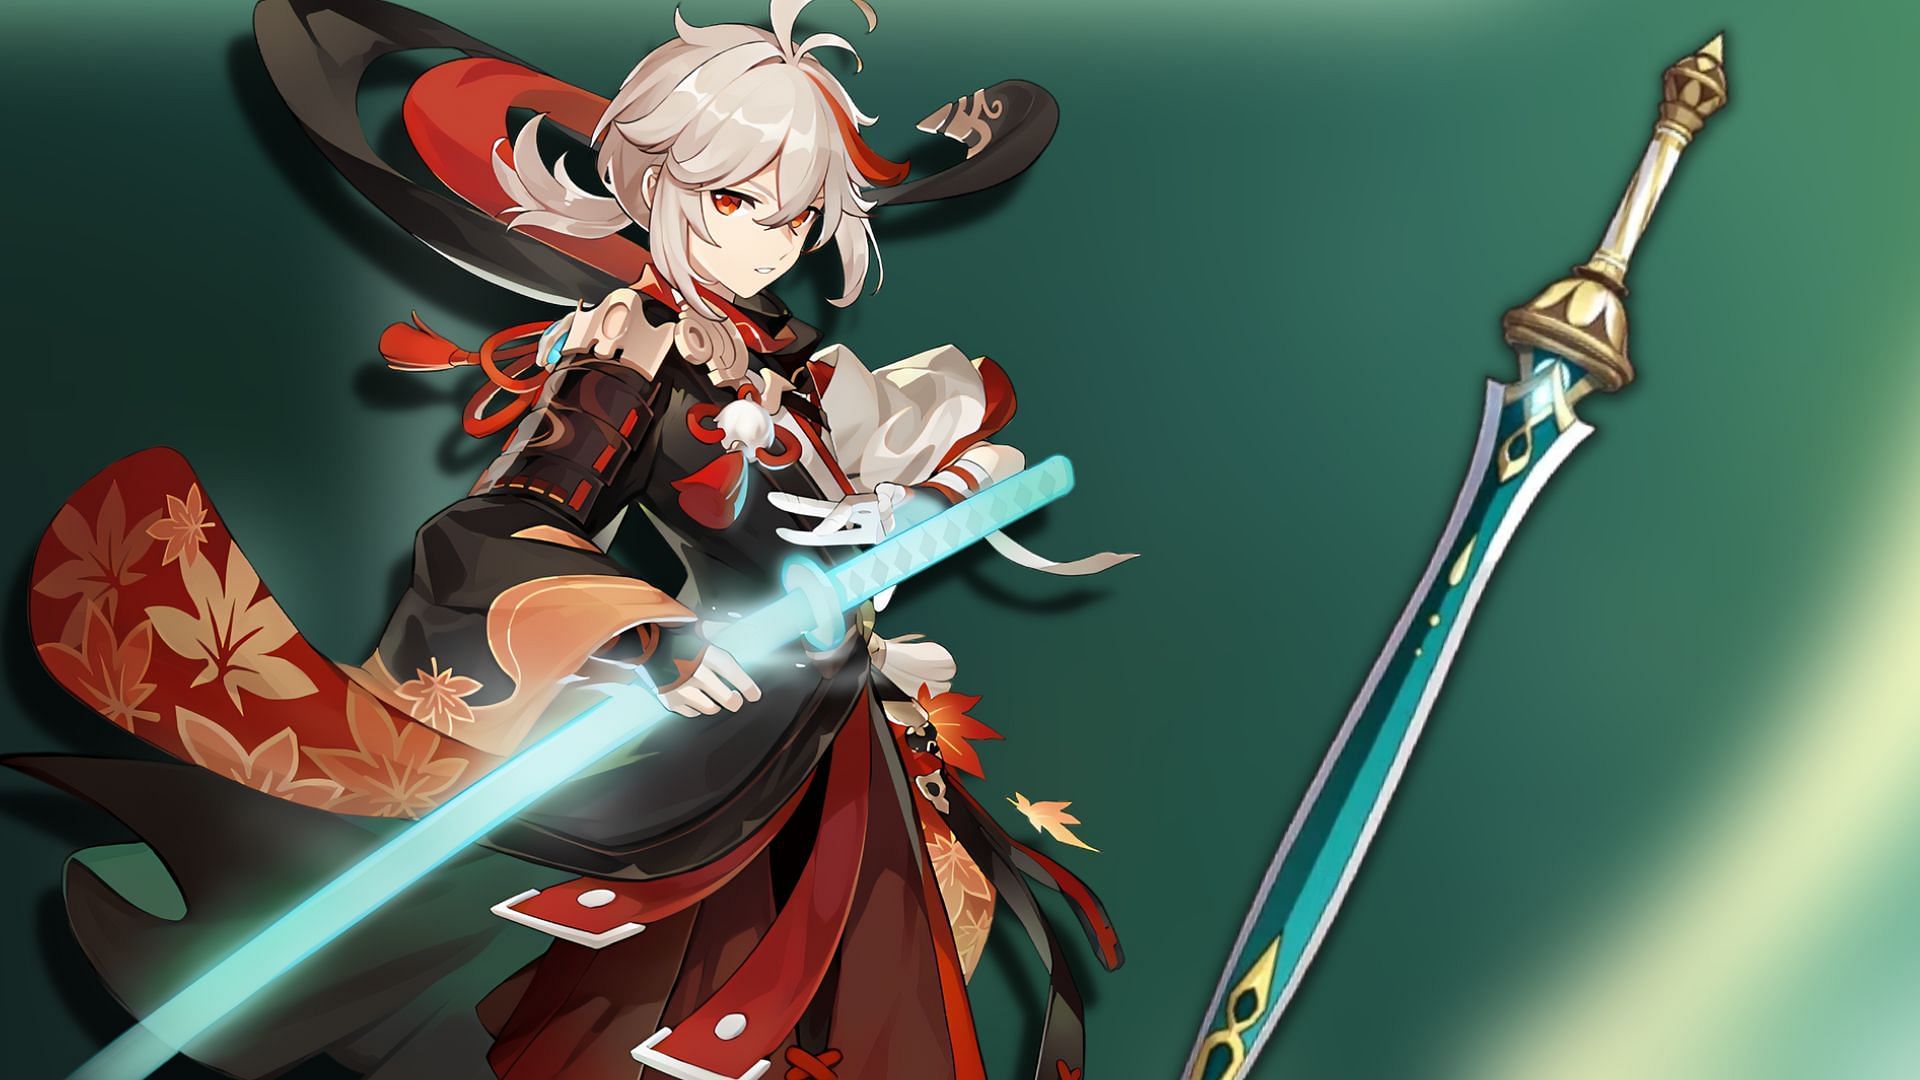 Patch 3.1 will introduce a new EM sword for Kazuha (Image via Genshin Impact)